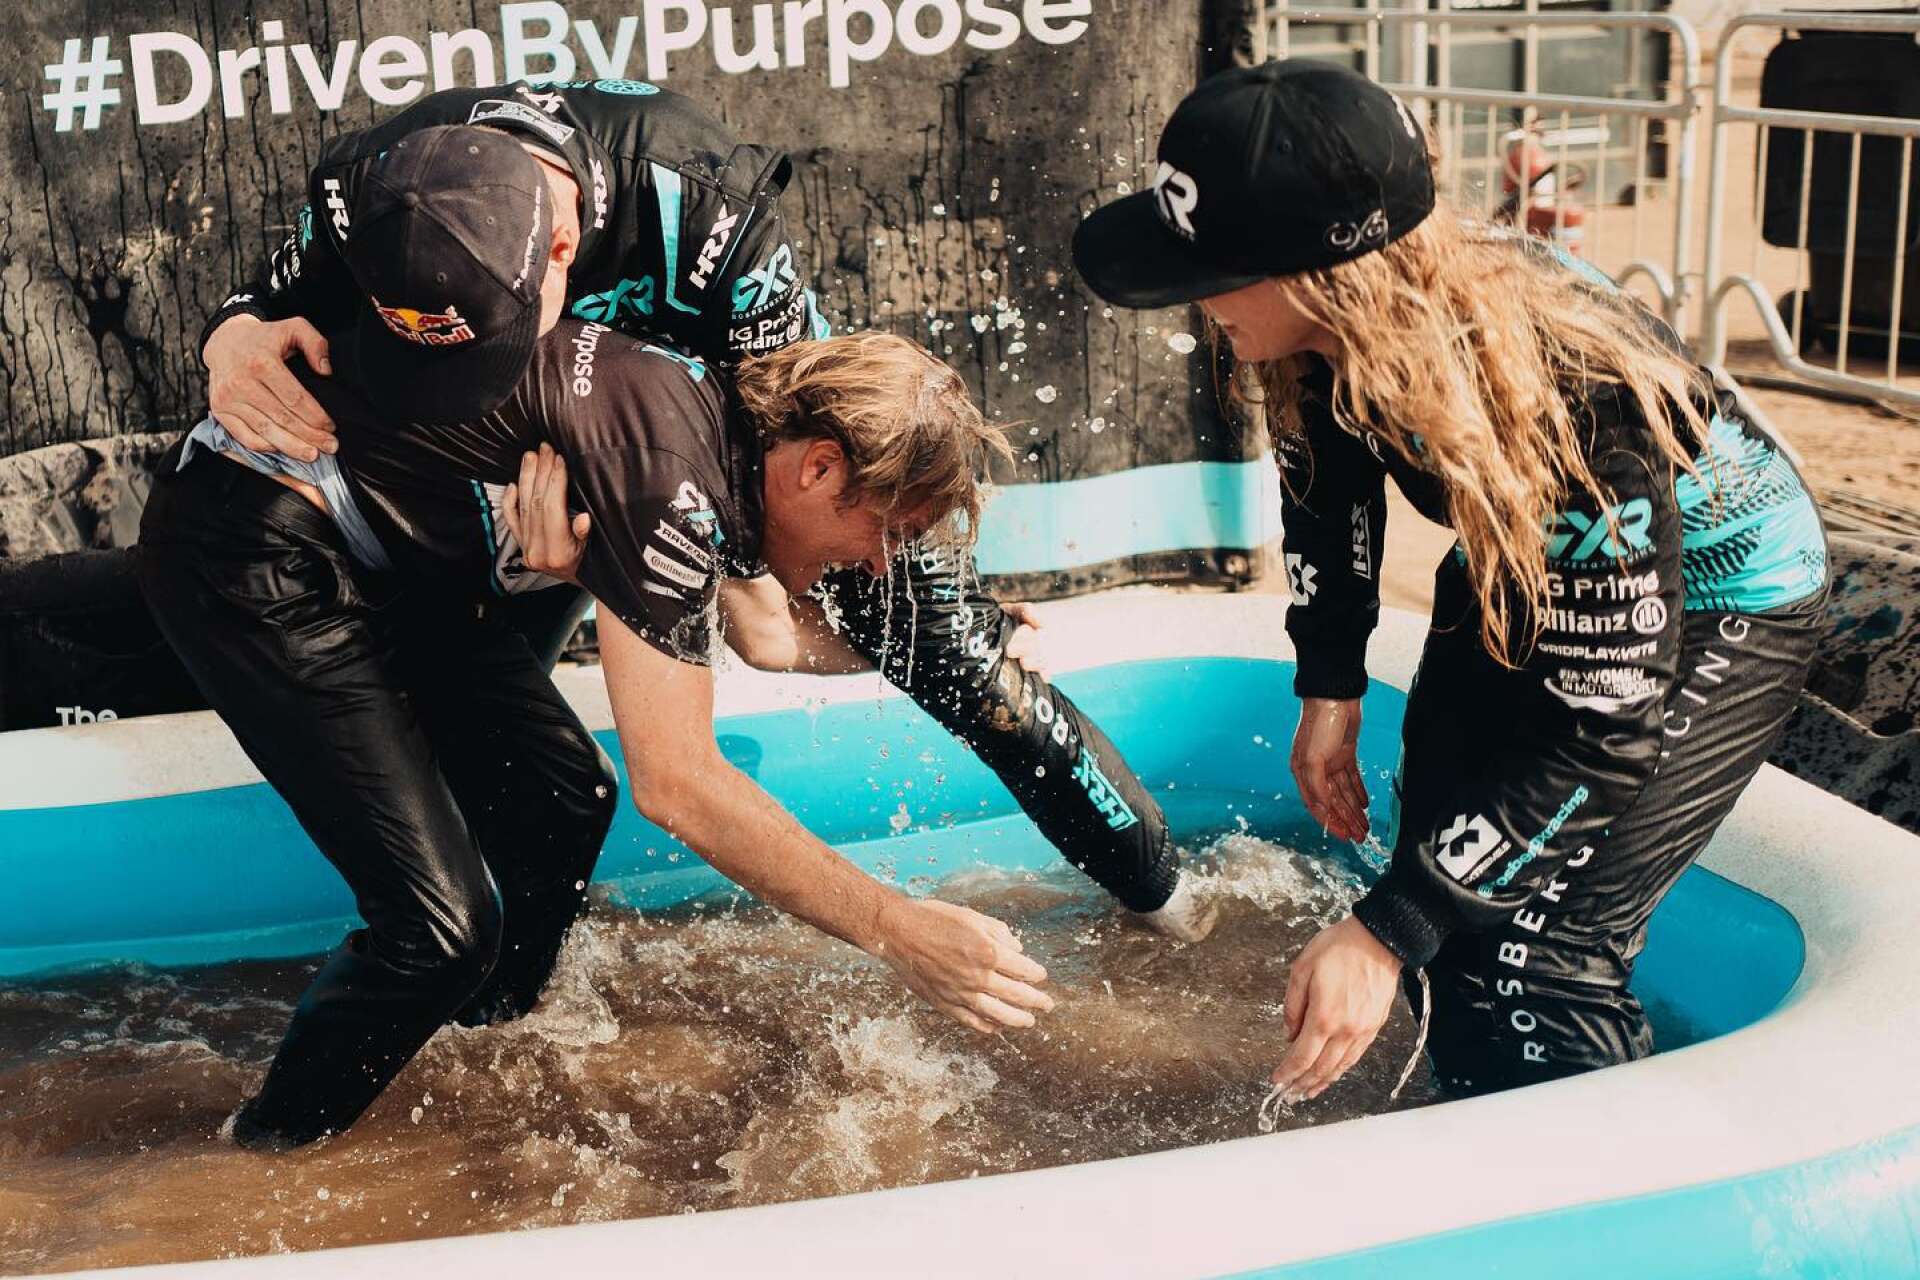 Johan Kristoffersson, Mikaela Åhlin-Kottulinsky och teamchefen Nico Rosberg brottades i den här plastbassängens smutsiga vatten efter dubbelsegern på Sardinien i somras. Om två veckor kan det bli dags igen.